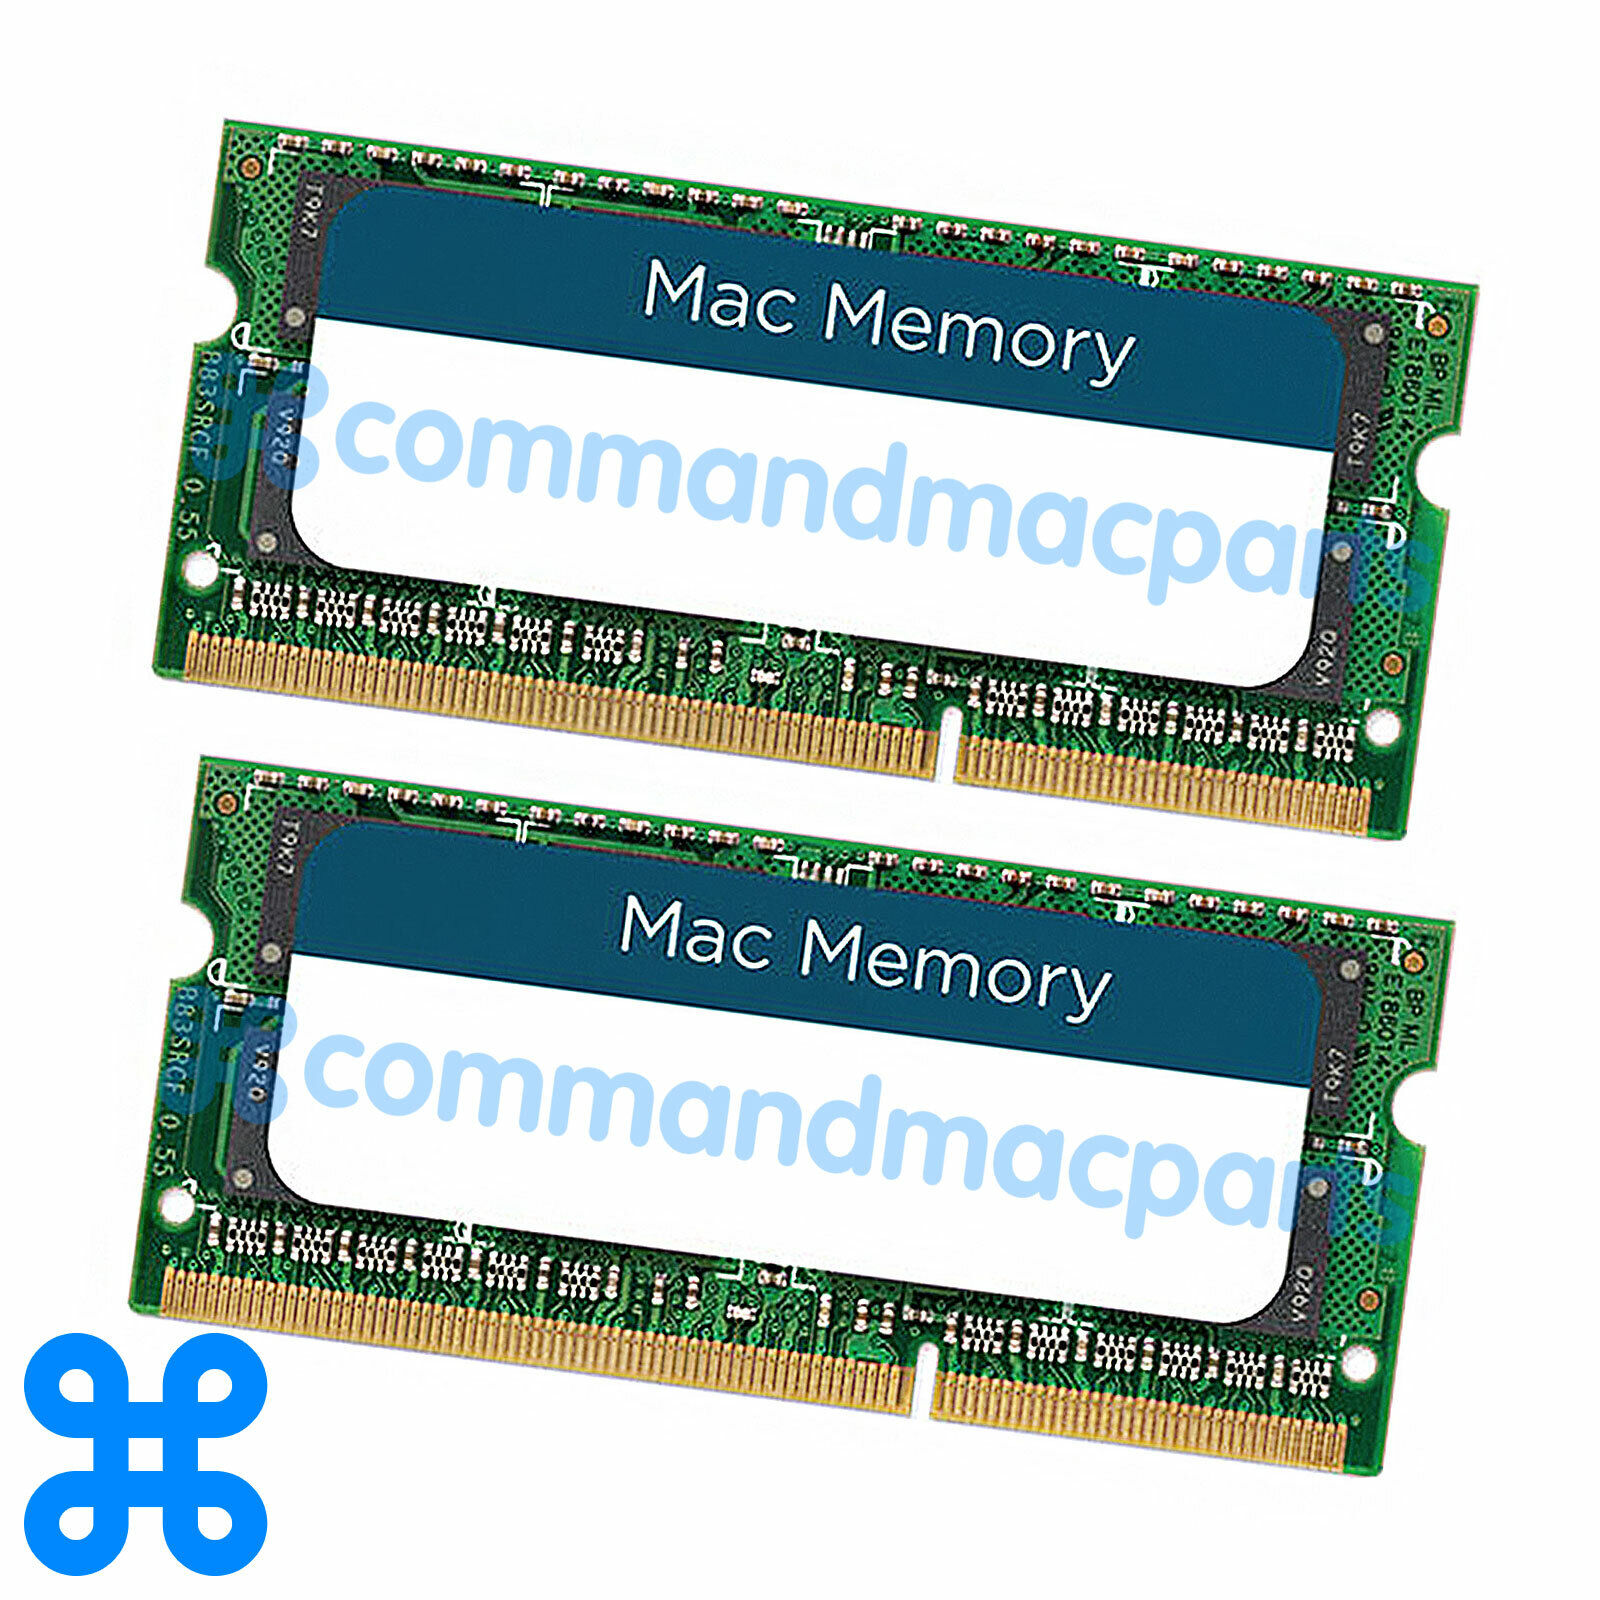 8GB 2x4GB DDR3L SODIMM PC3L-12800 1600MHz MacBook Pro,iMac,Mac mini 2012-2015